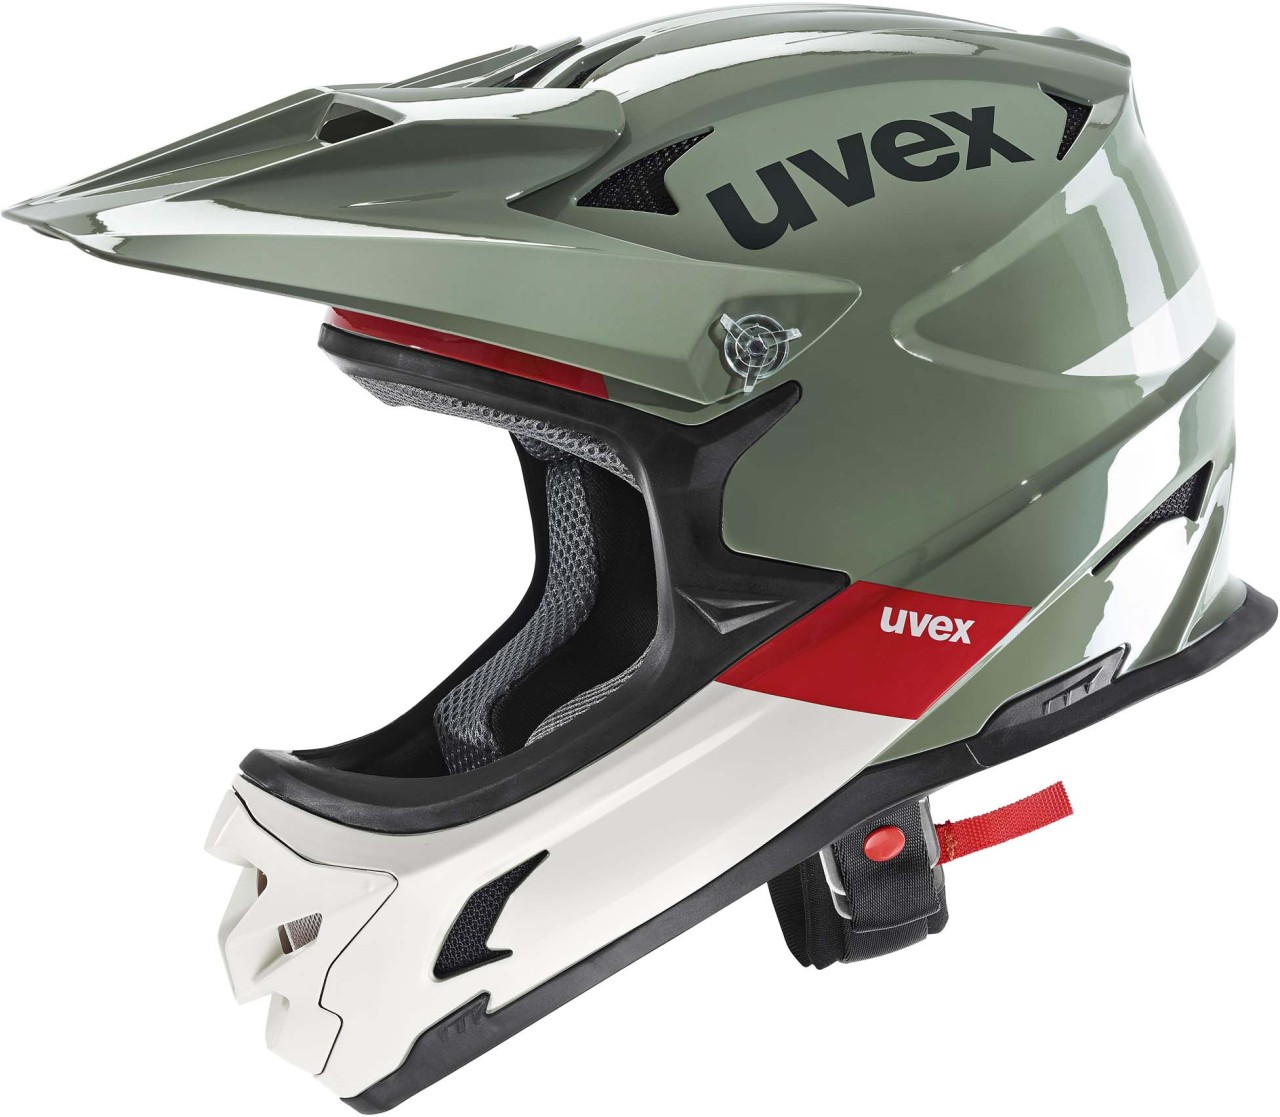 Uvex hlmt 10 - MTB bike helmet